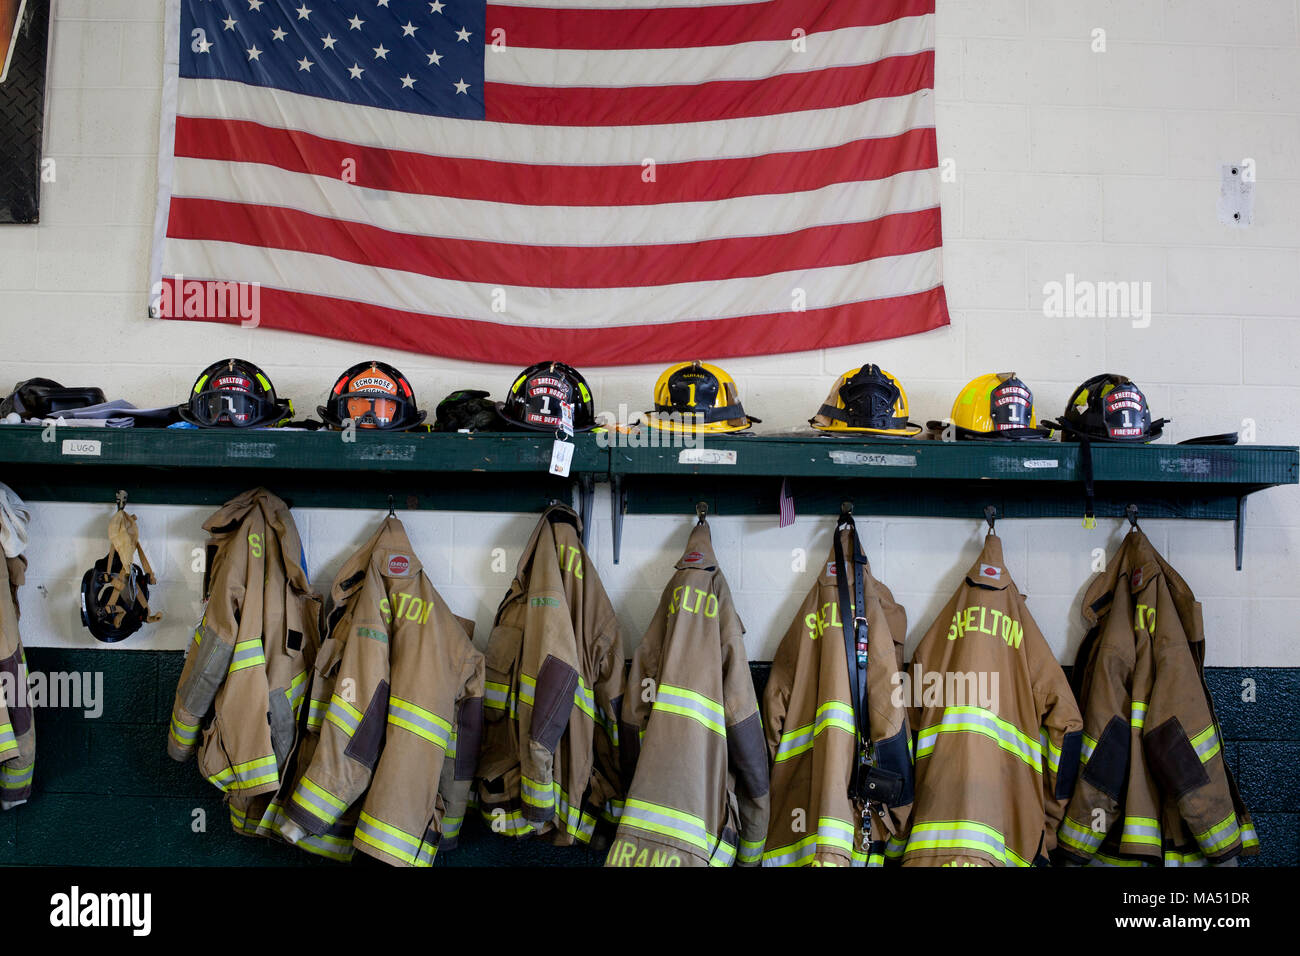 Indumenti di protezione, caschi per vigili del fuoco e affluenza cappotti lungo con una bandiera americana sul display nel volontariato locale firehouse Foto Stock